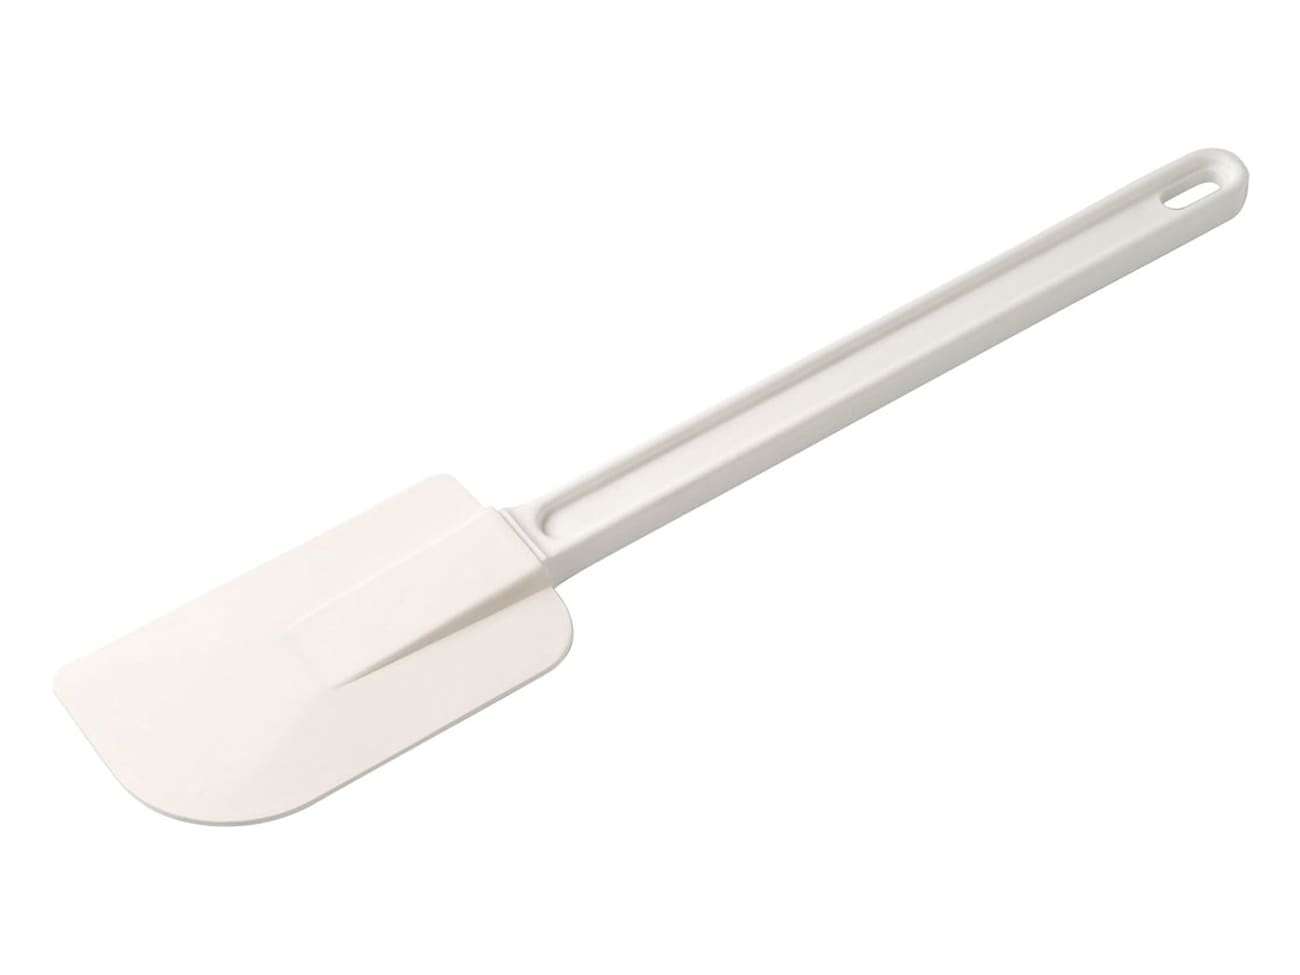 Petite spatule Maryse pour vos préparations de cosmétiques maison